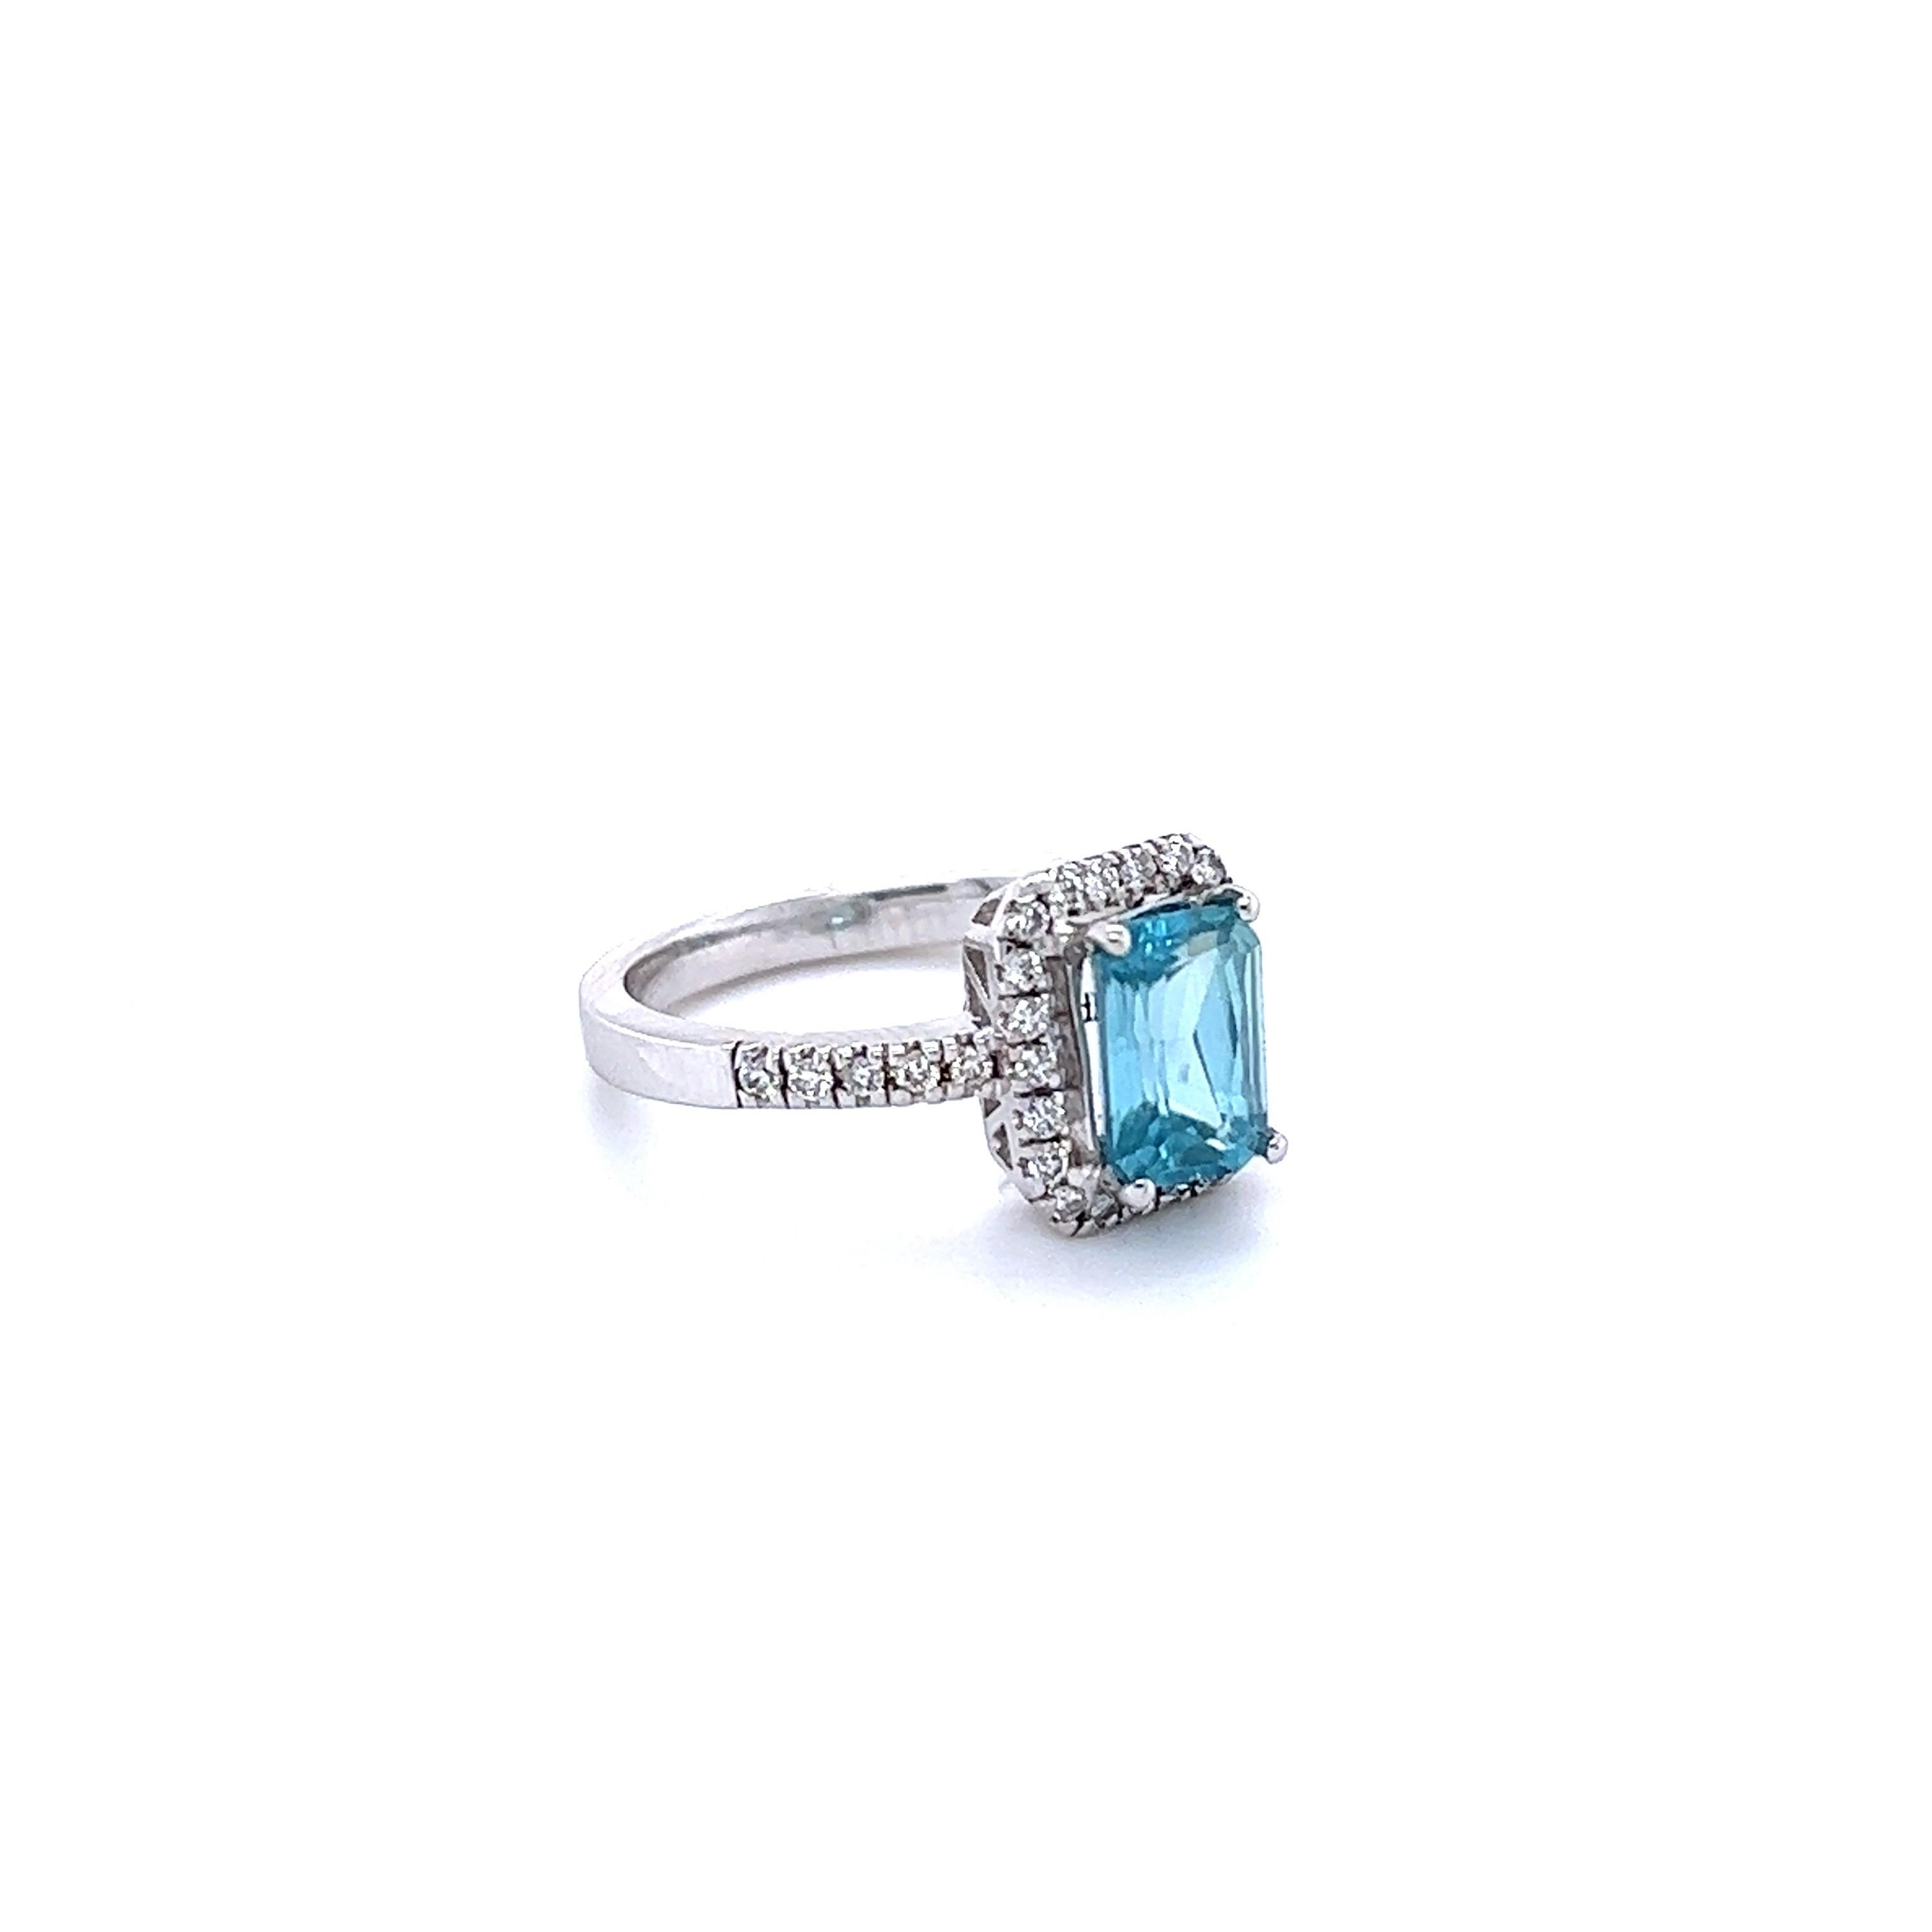 Le zircon bleu est une pierre naturelle extraite principalement au Sri Lanka, au Myanmar et en Australie.  
Cette bague comporte un zircon bleu de taille émeraude pesant 2,41 carats et entouré de 32 diamants de taille ronde pesant 0,32 carats. Le